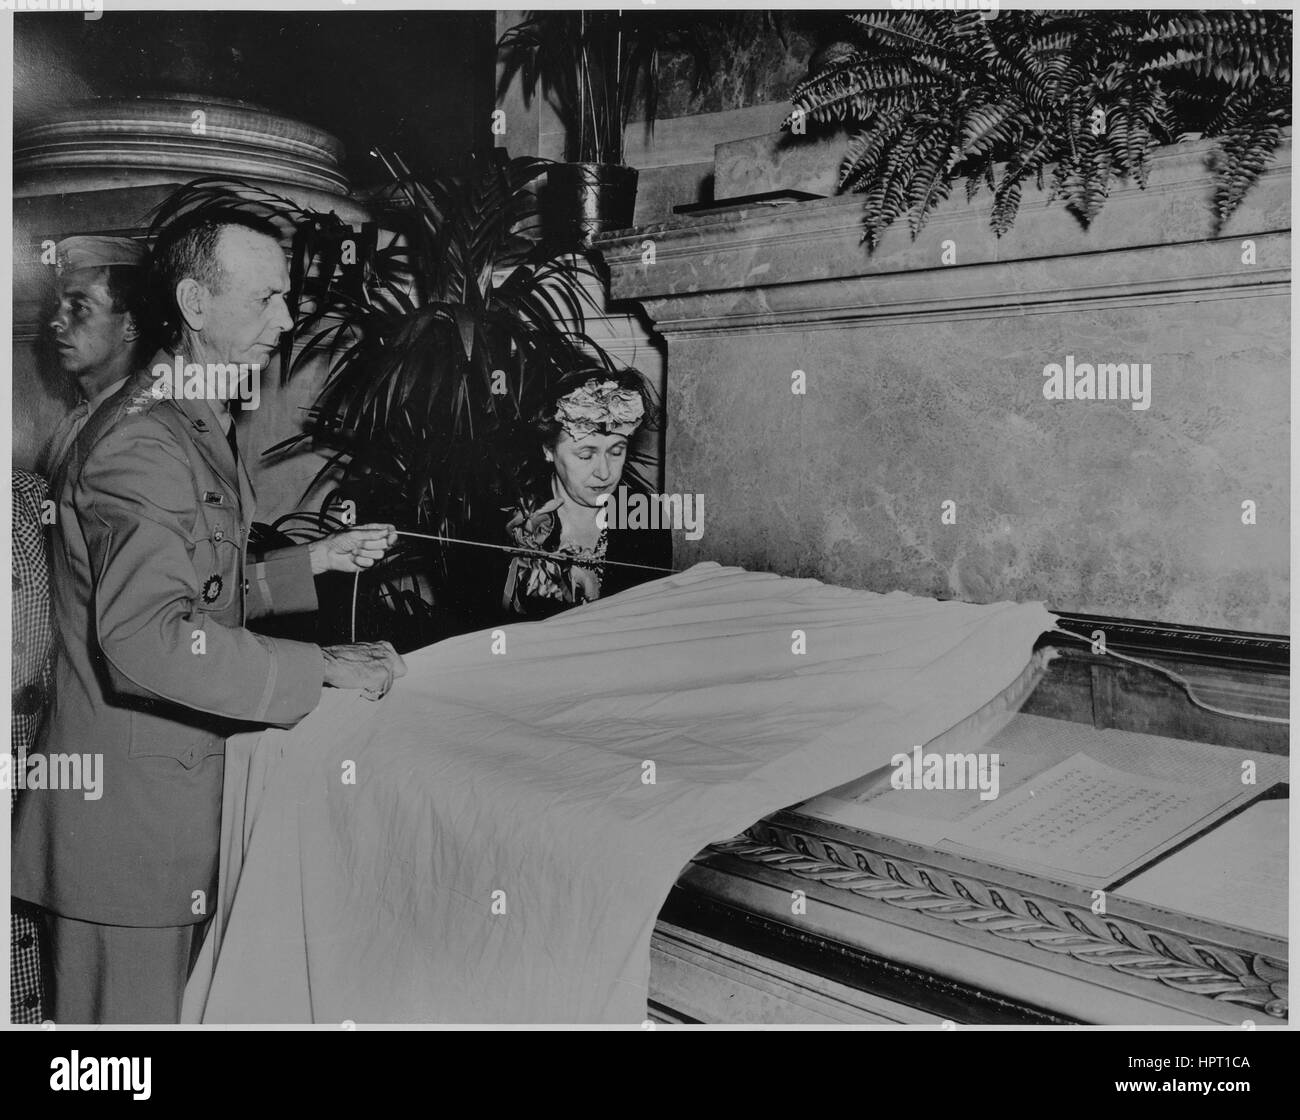 General Jonathan Wainwright, Befehlshaber der Alliierten Streitkräfte, und seine Frau enthüllen japanische Kapitulation Dokumente, Washington, DC, 12. September 1945. Stockfoto